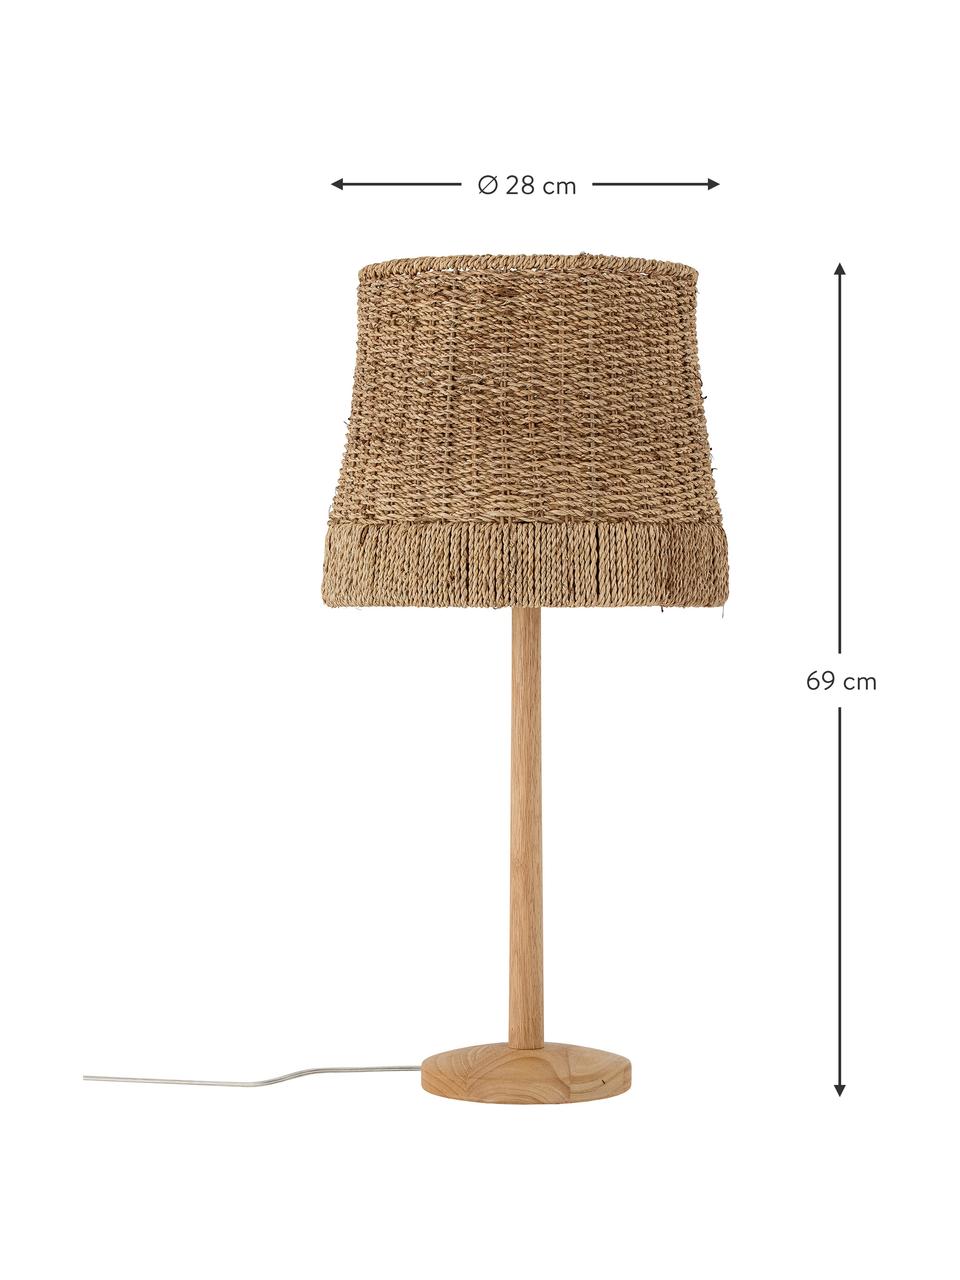 Lampa stołowa z rattanu Kakasi, Rattan, drewno kauczukowe, Ø 28 x W 69 cm